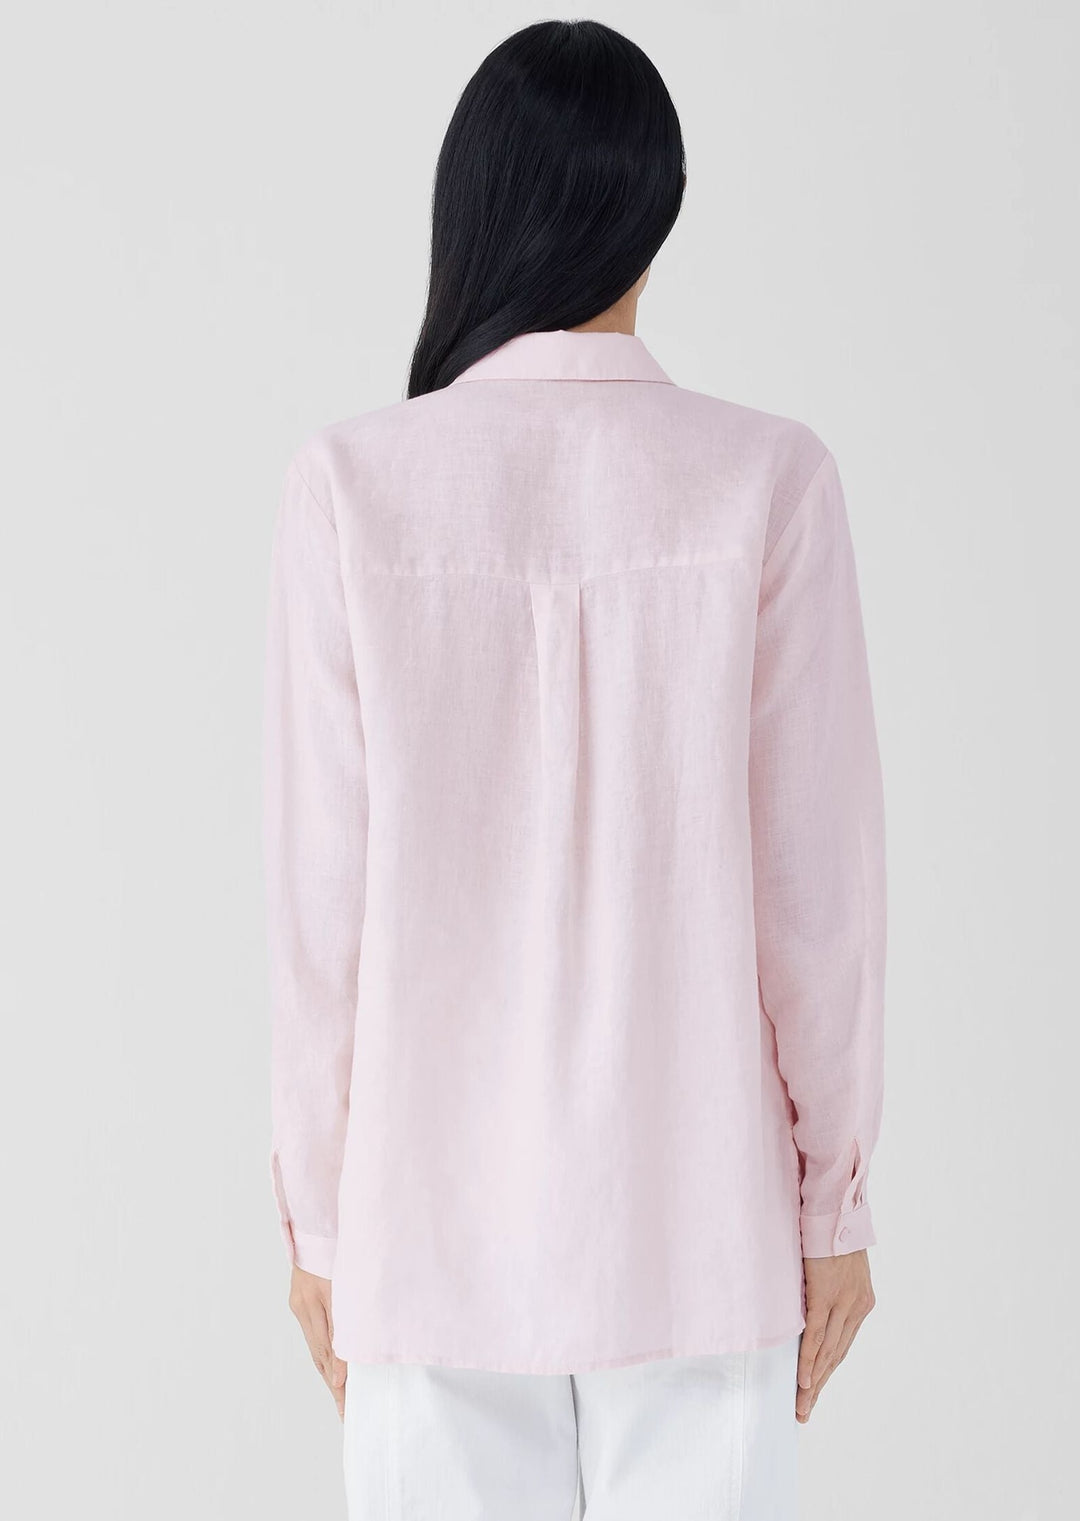 Eileen Fisher - Organic Handkerchief Linen Classic Collar Shirt